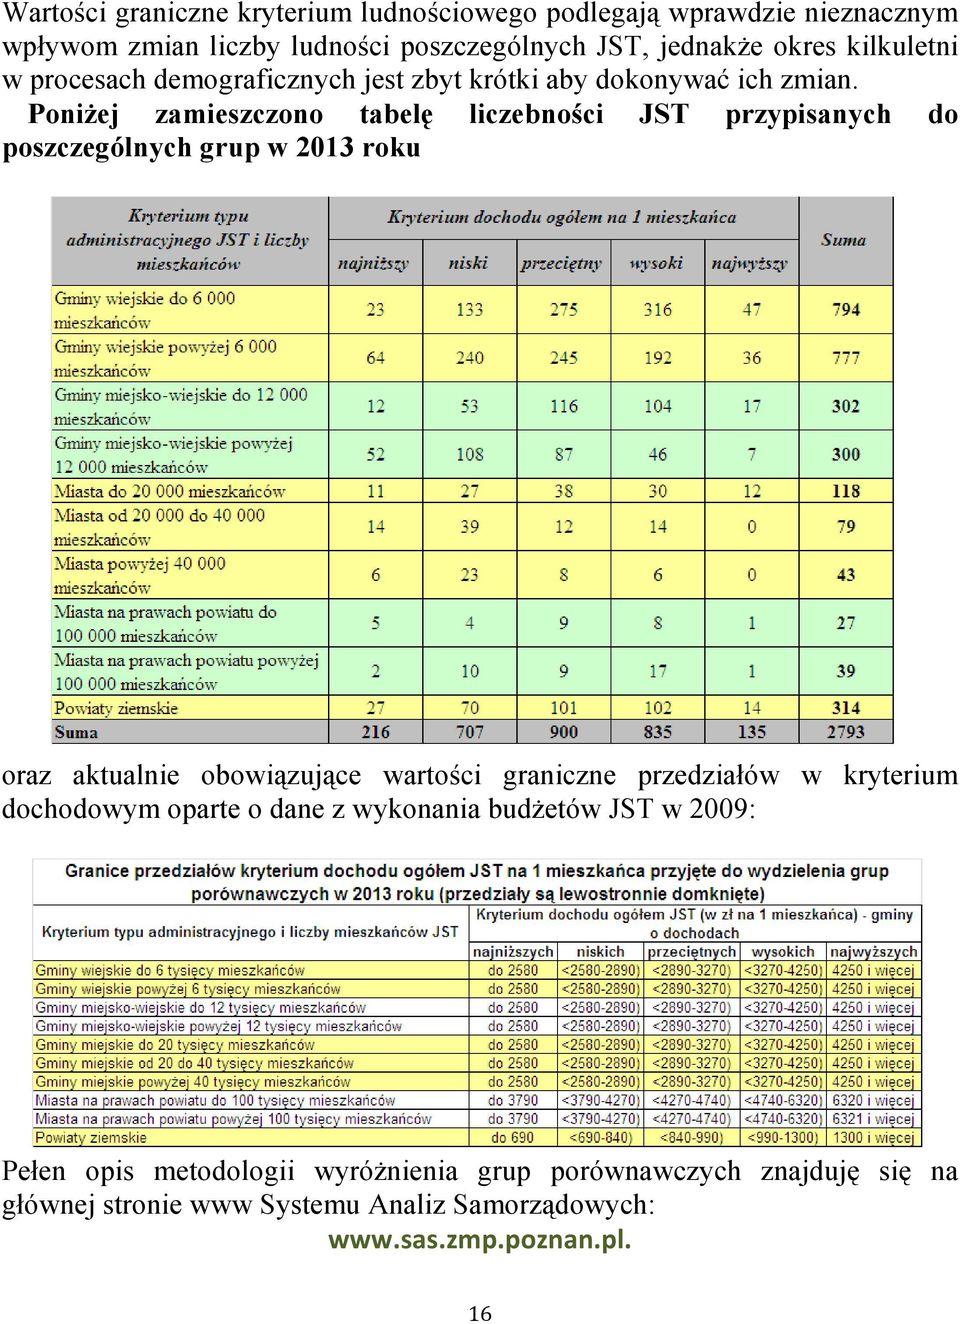 Poniżej zamieszczono tabelę liczebności JST przypisanych do poszczególnych grup w 2013 roku oraz aktualnie obowiązujące wartości graniczne